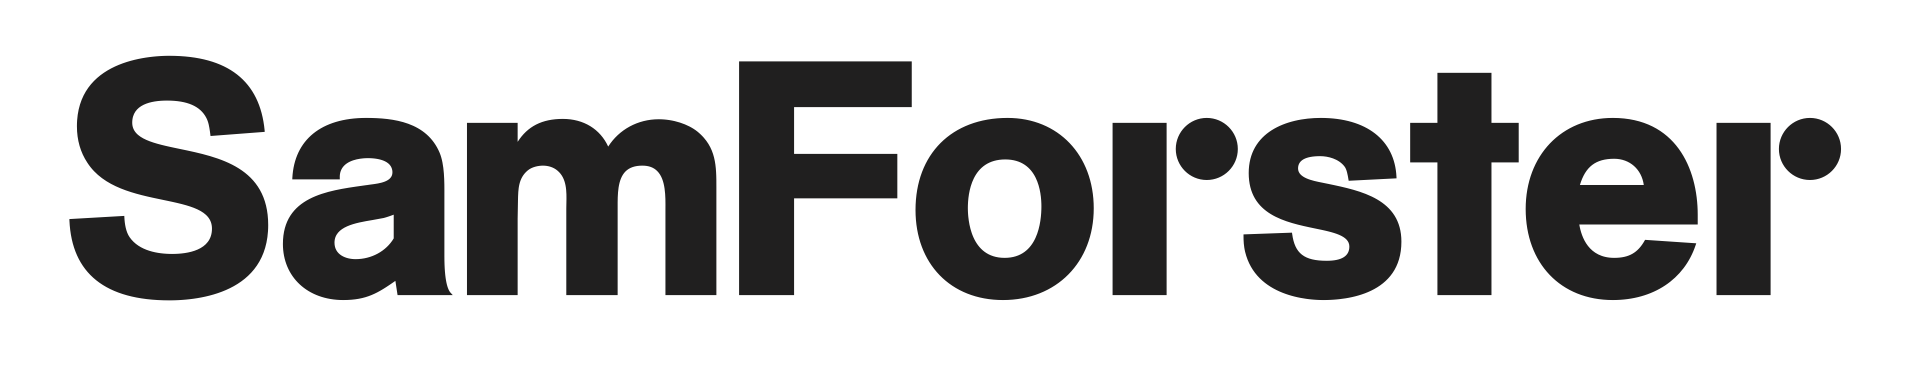 logo for Sam Forster Associates Ltd